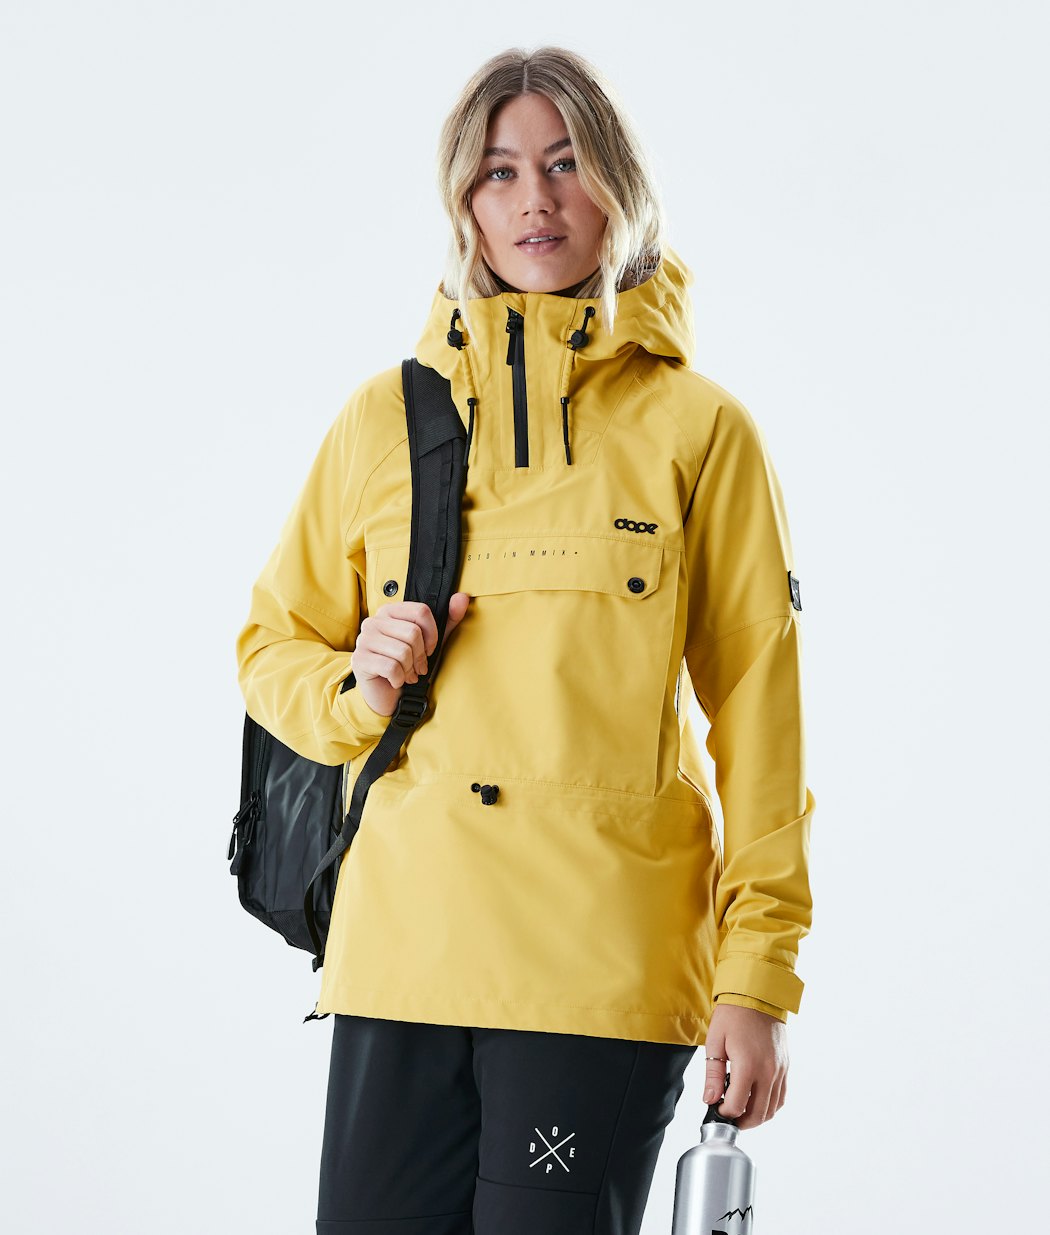 Hiker W Outdoor Jacket Women Yellow